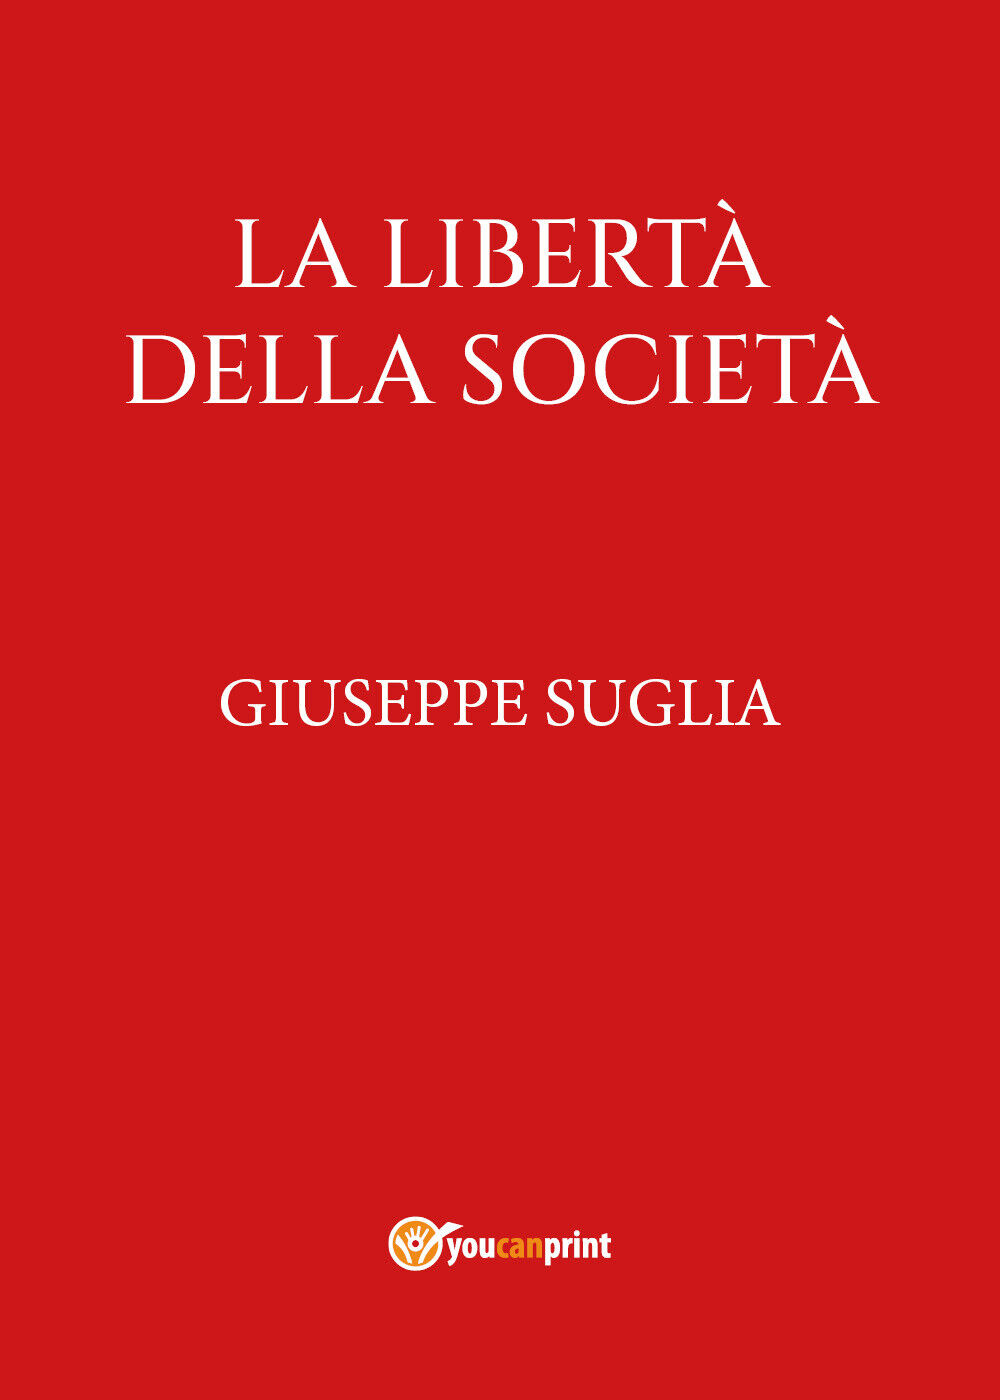 La libert? della societ? di Giuseppe Suglia,  2022,  Youcanprint